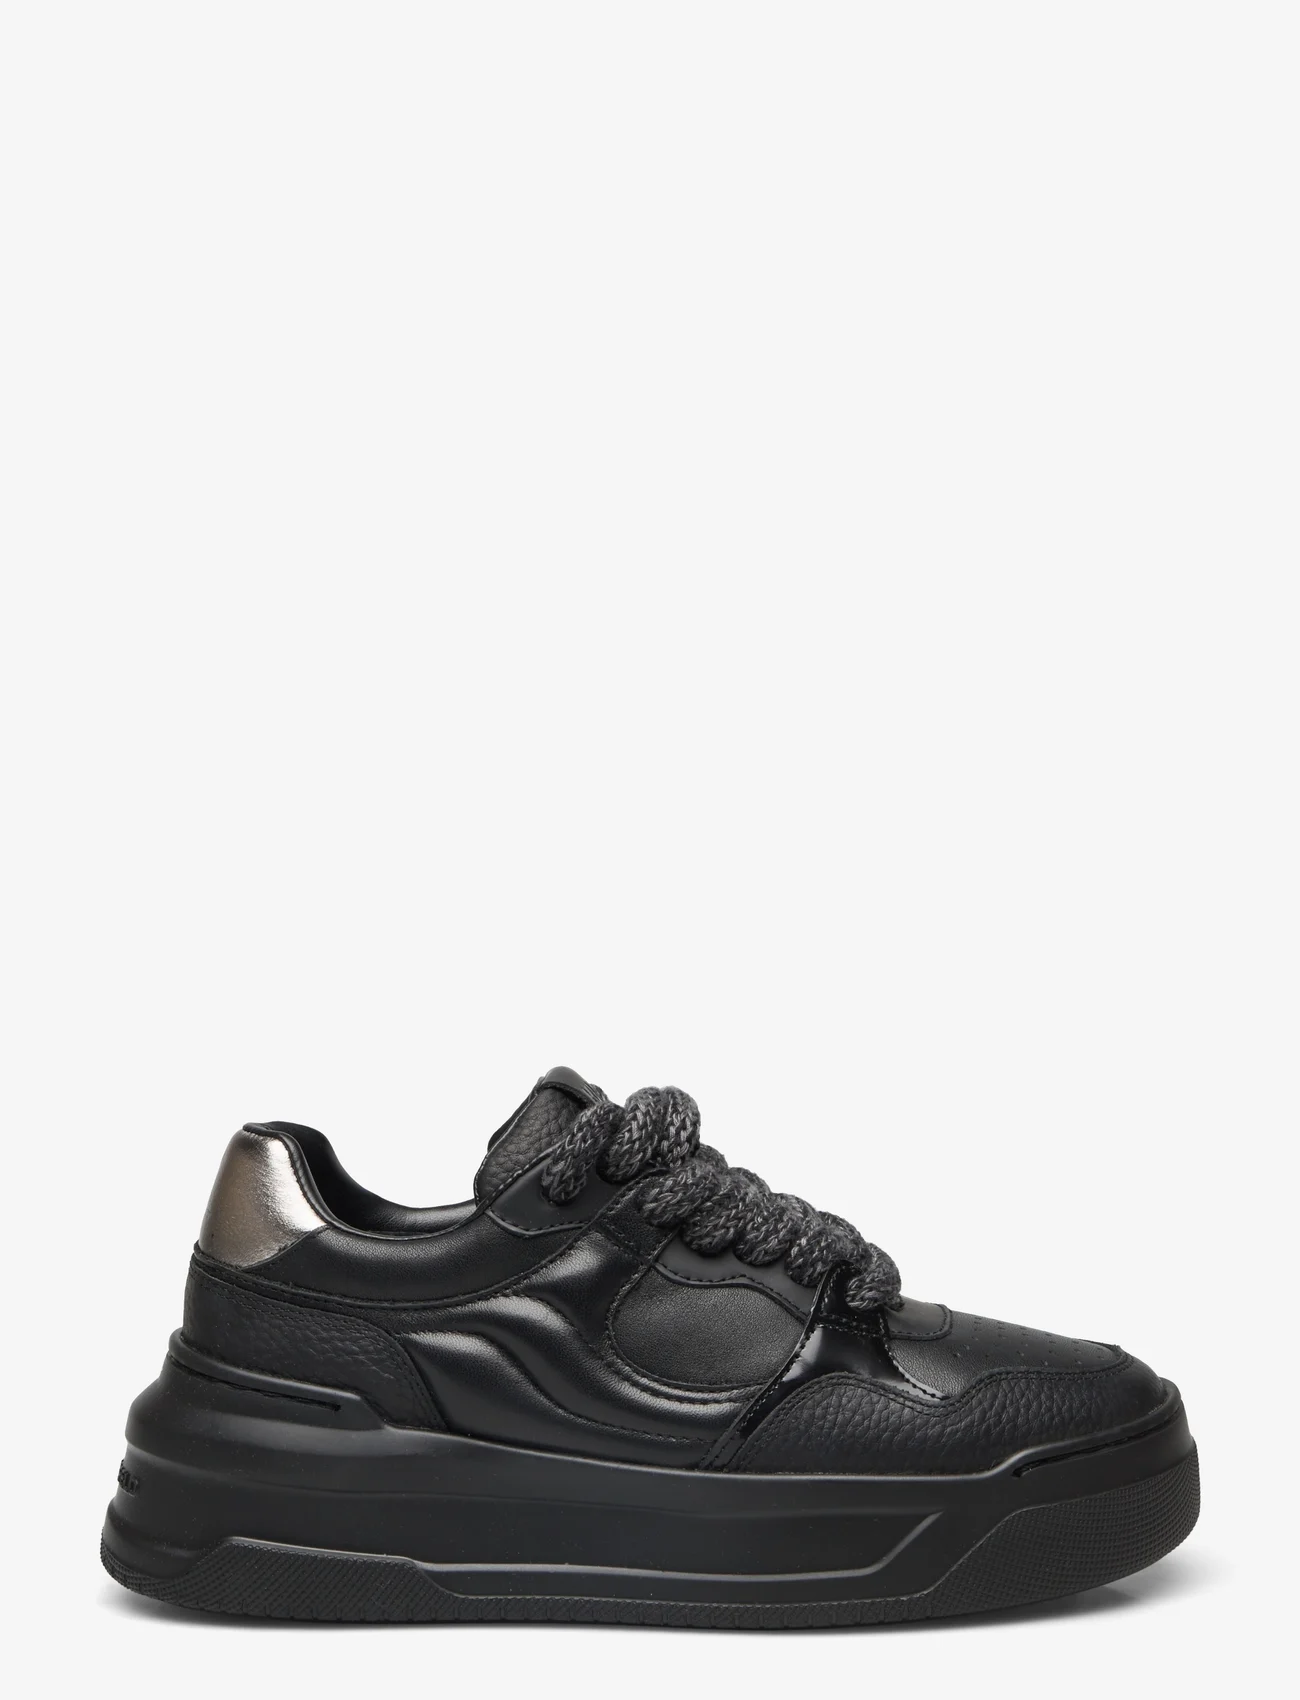 Karl Lagerfeld Shoes - KREW MAX KC - low top sneakers - black lthr mono - 1